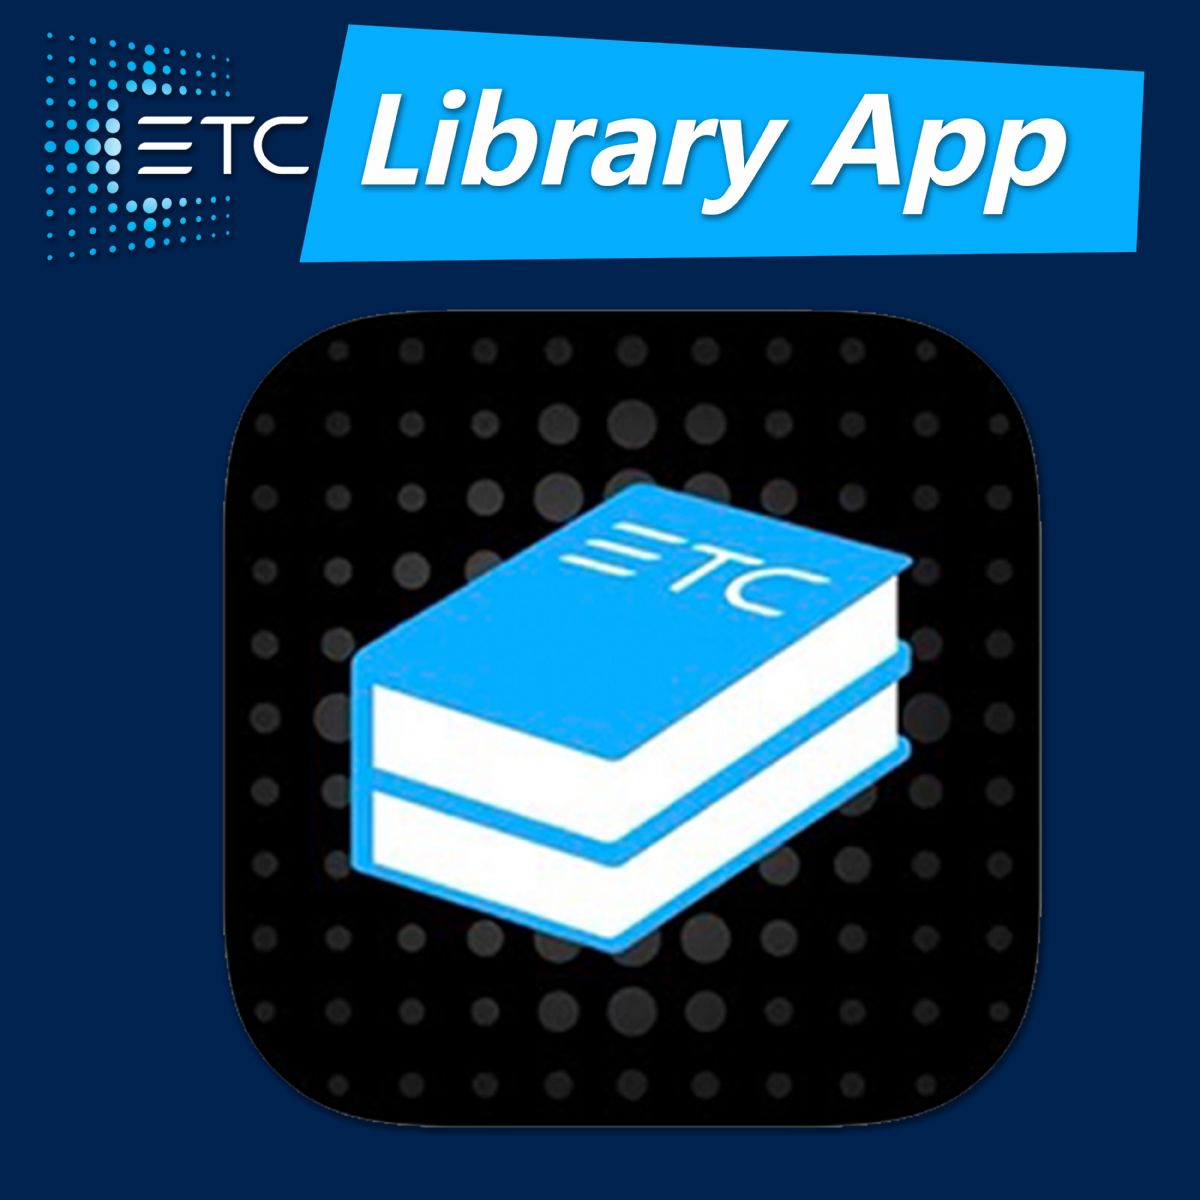 ETC Library